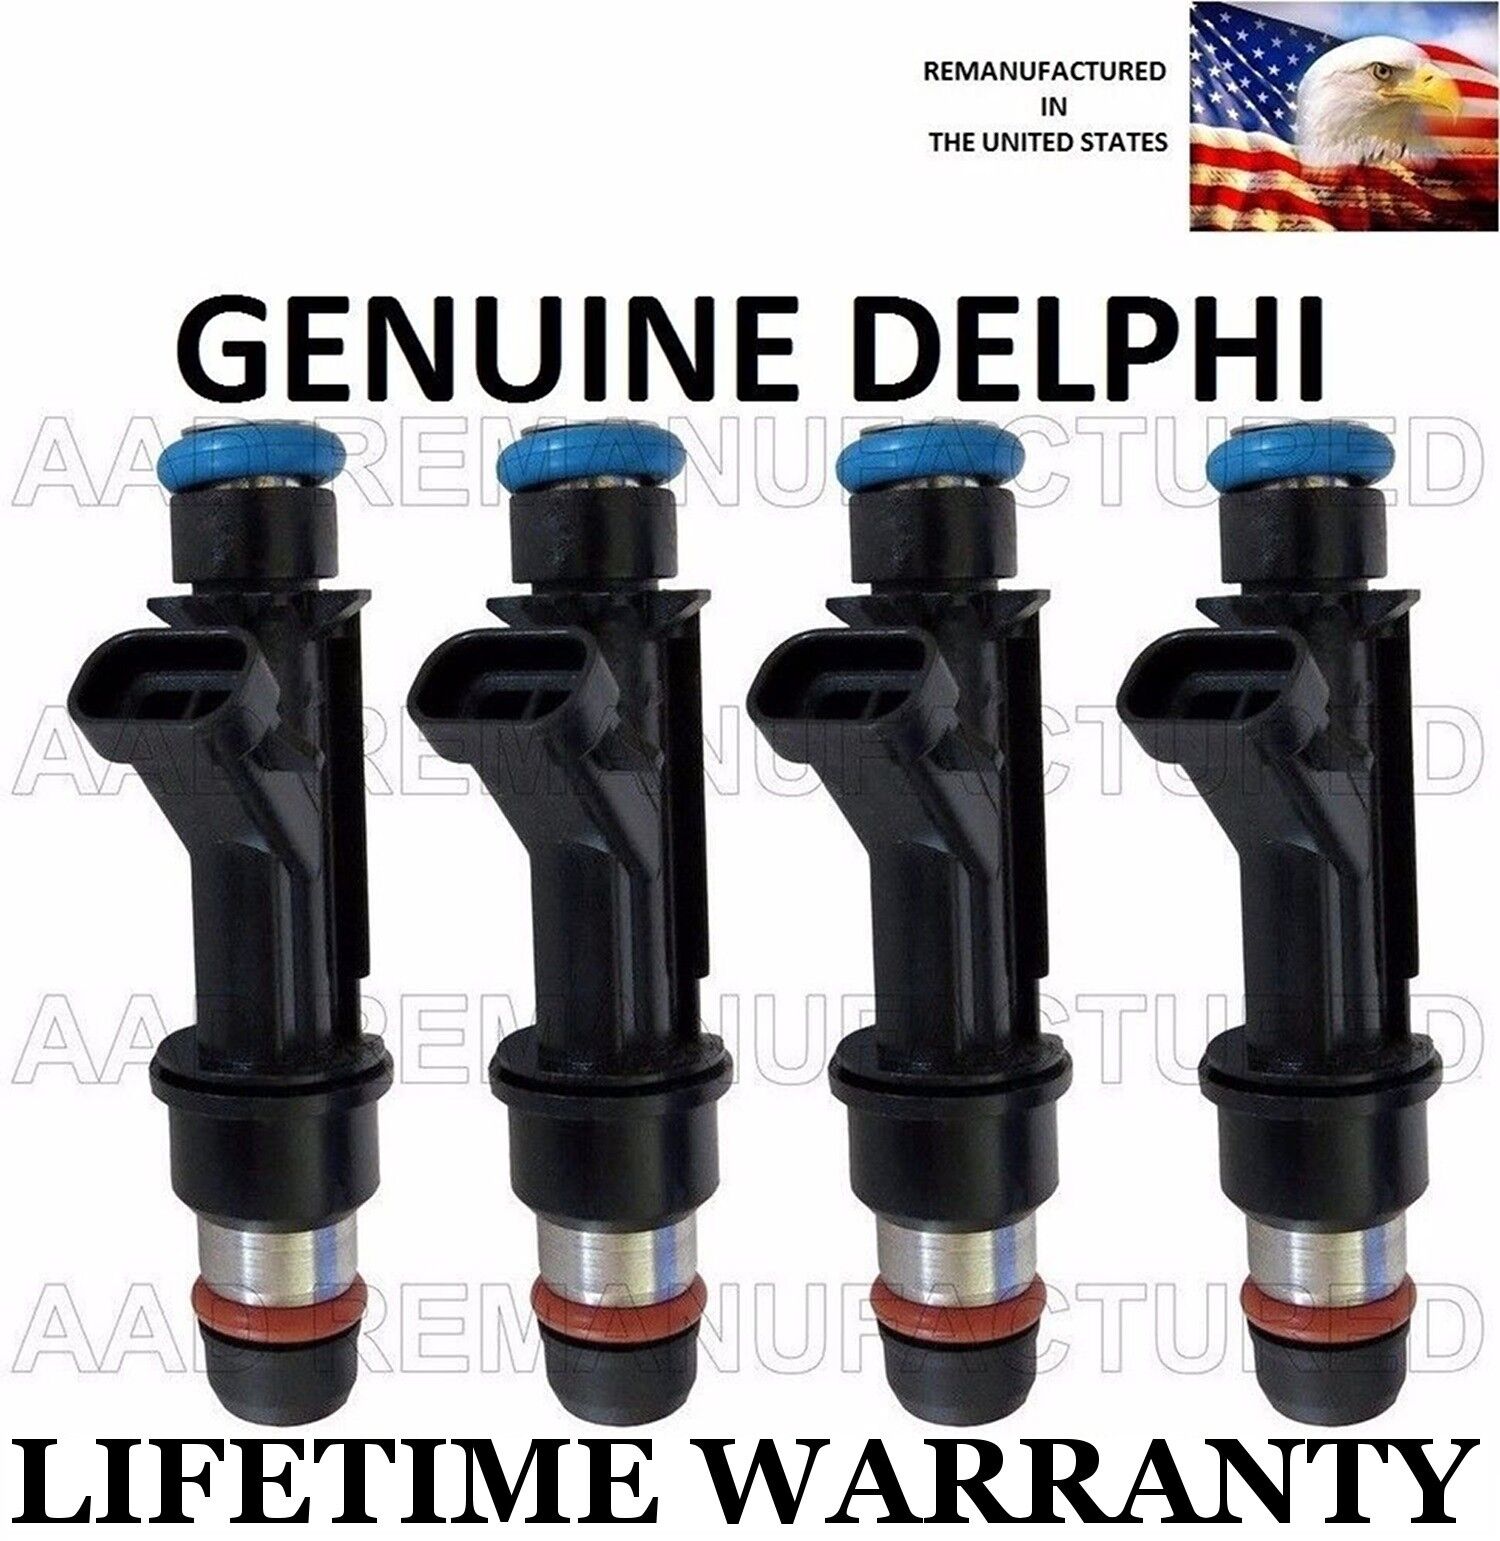 Genuine Delphi Set Of 4 Fuel Injectors for Chevy Cavalier Pontiac Sunfire 2.2L 